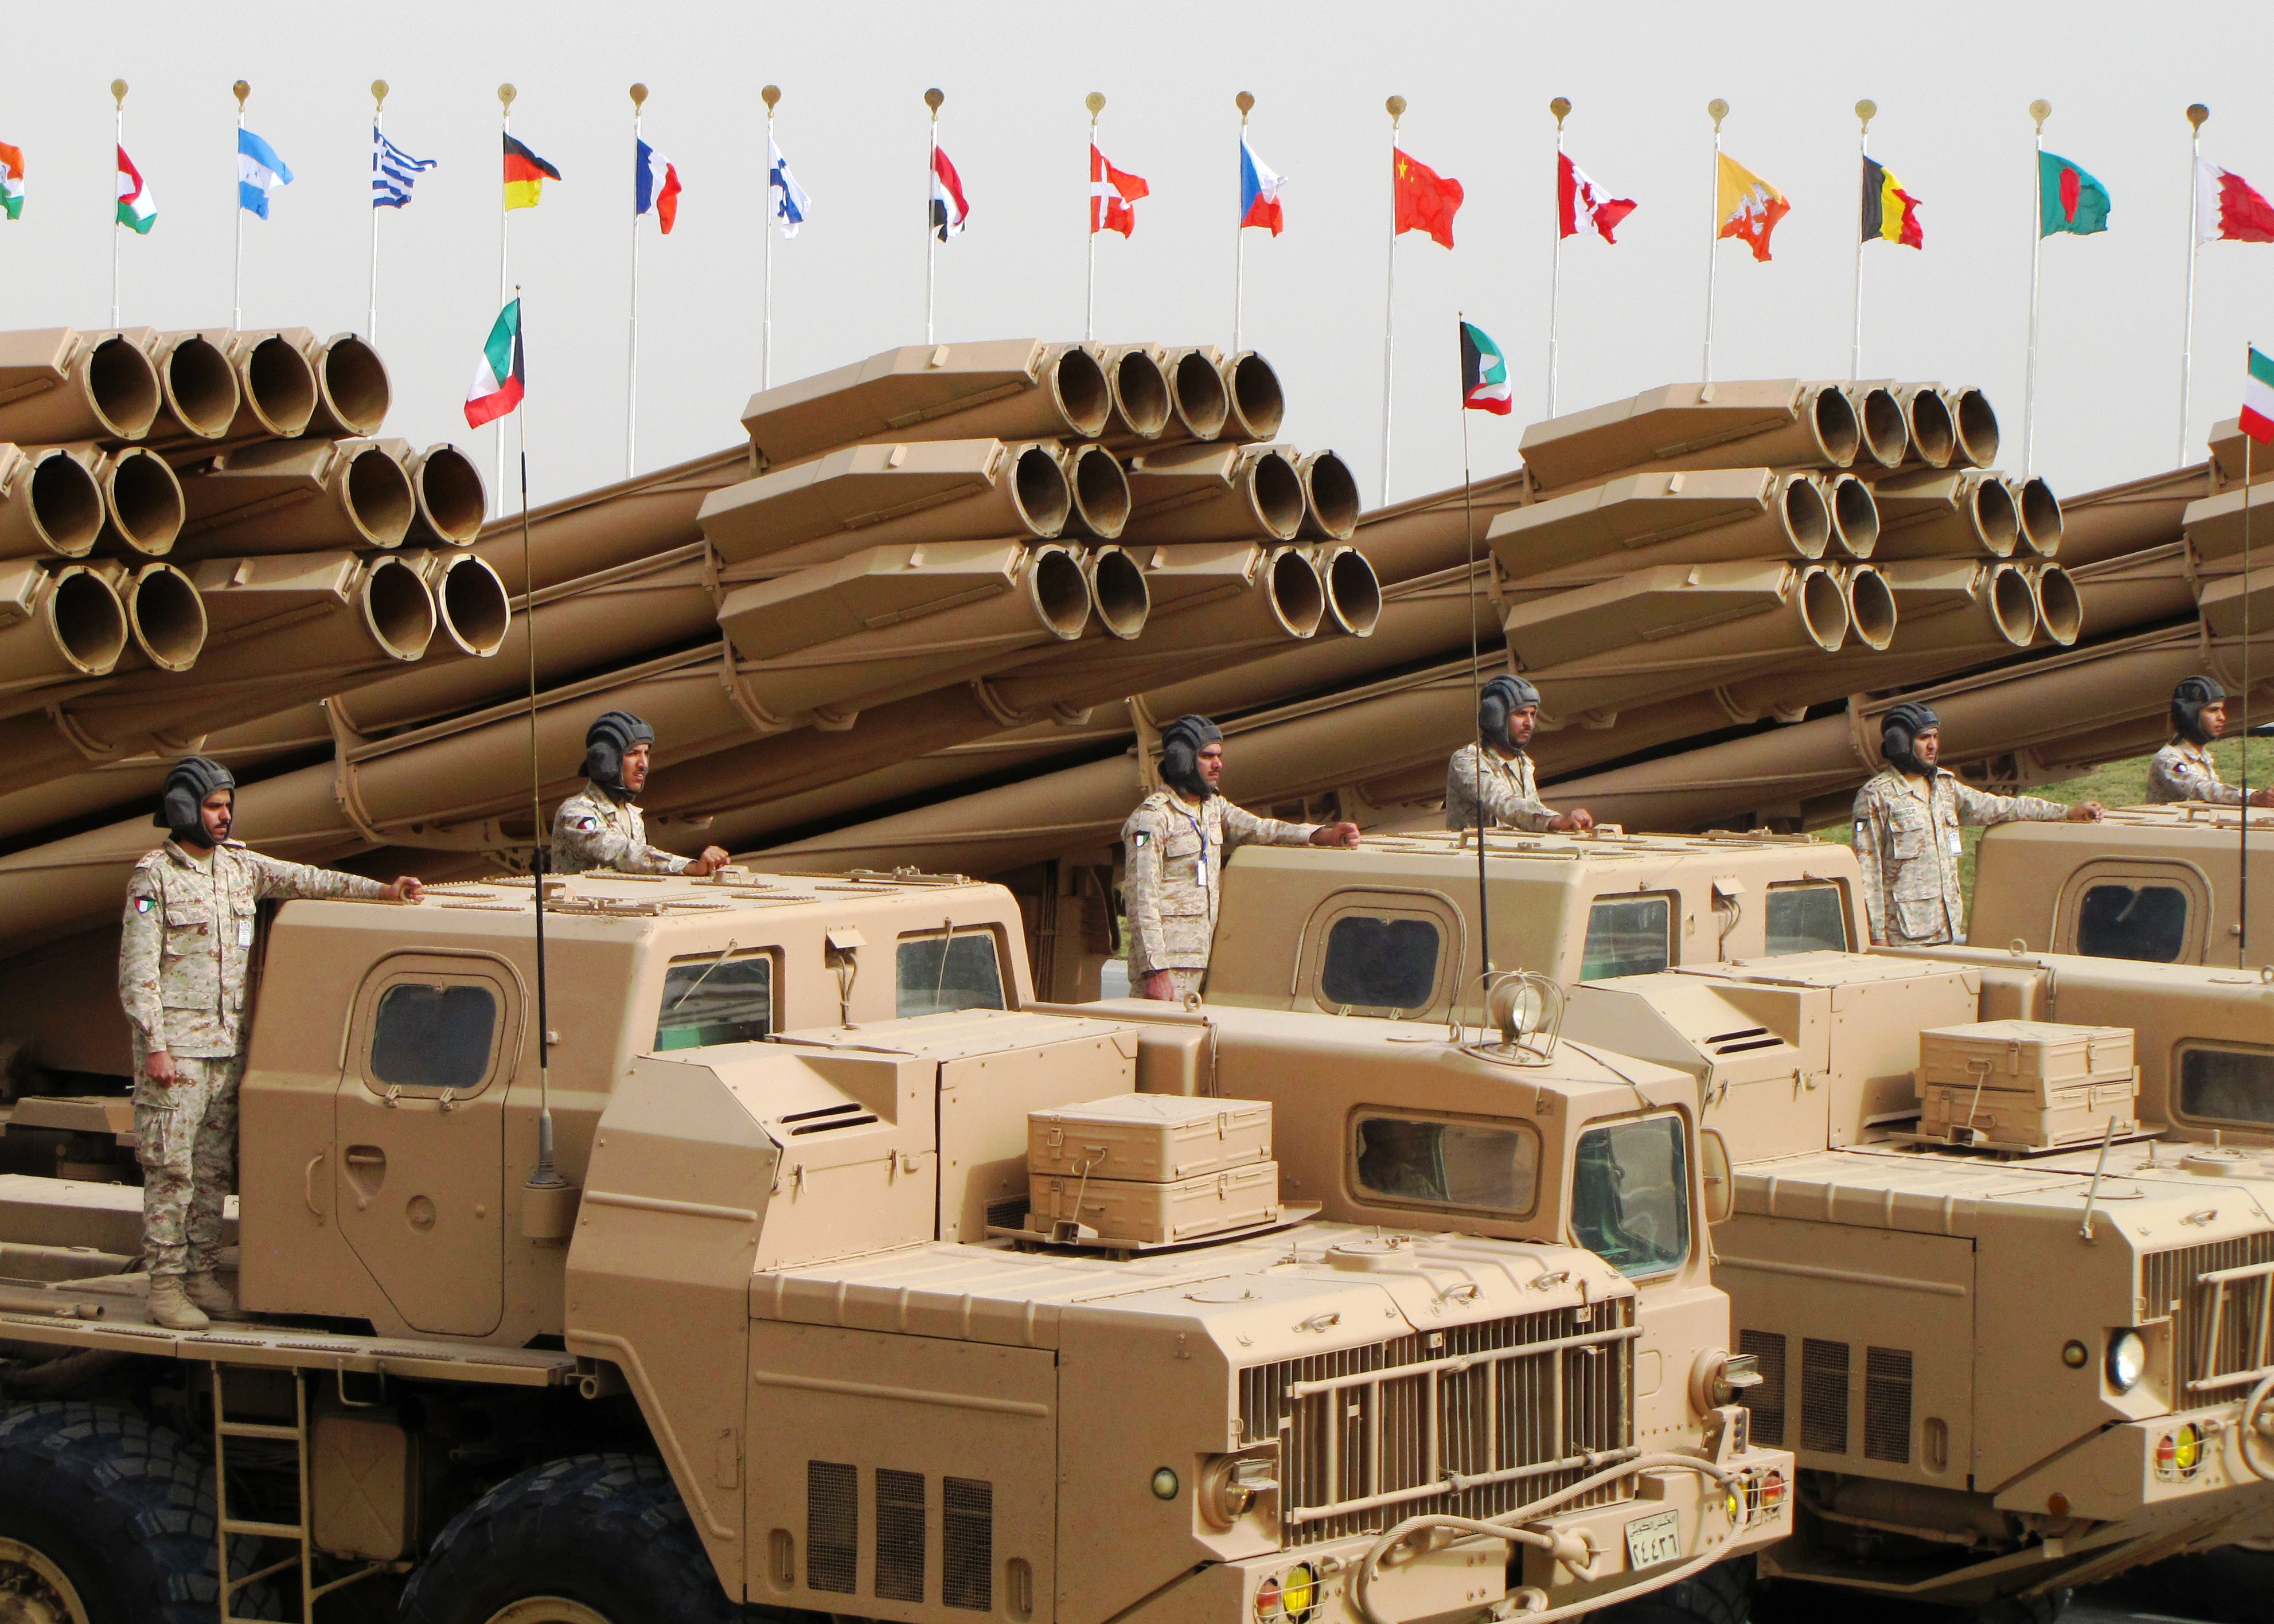  العراق يطلب200 مركبة برادلي القتال؛ الصفقة السعودية قيد التنفيذ - صفحة 2 Kuwait_BM-30_Smerch_launchers,_2011